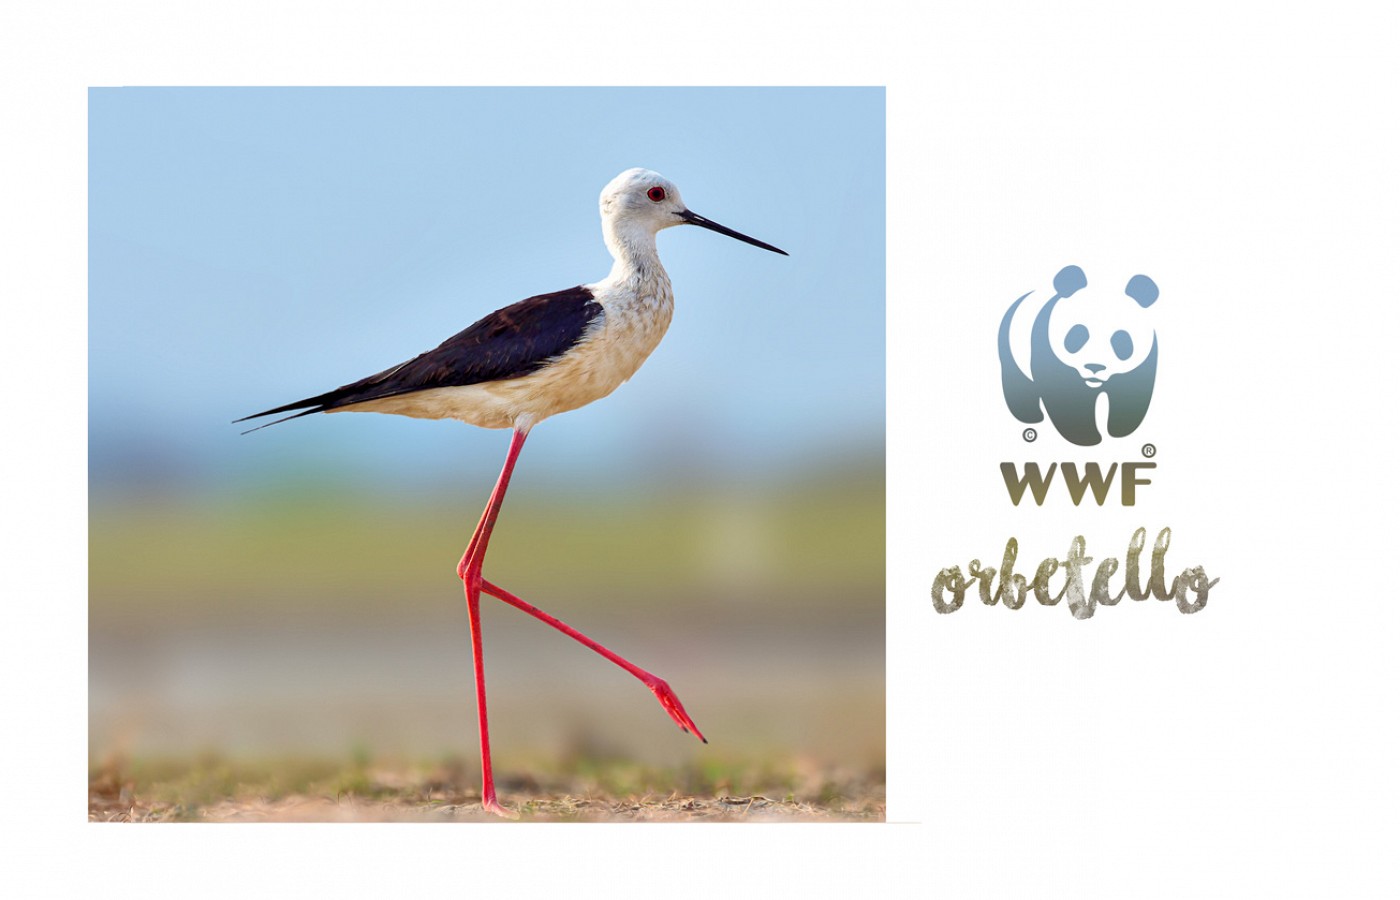 WWF Naturoase Orbetello